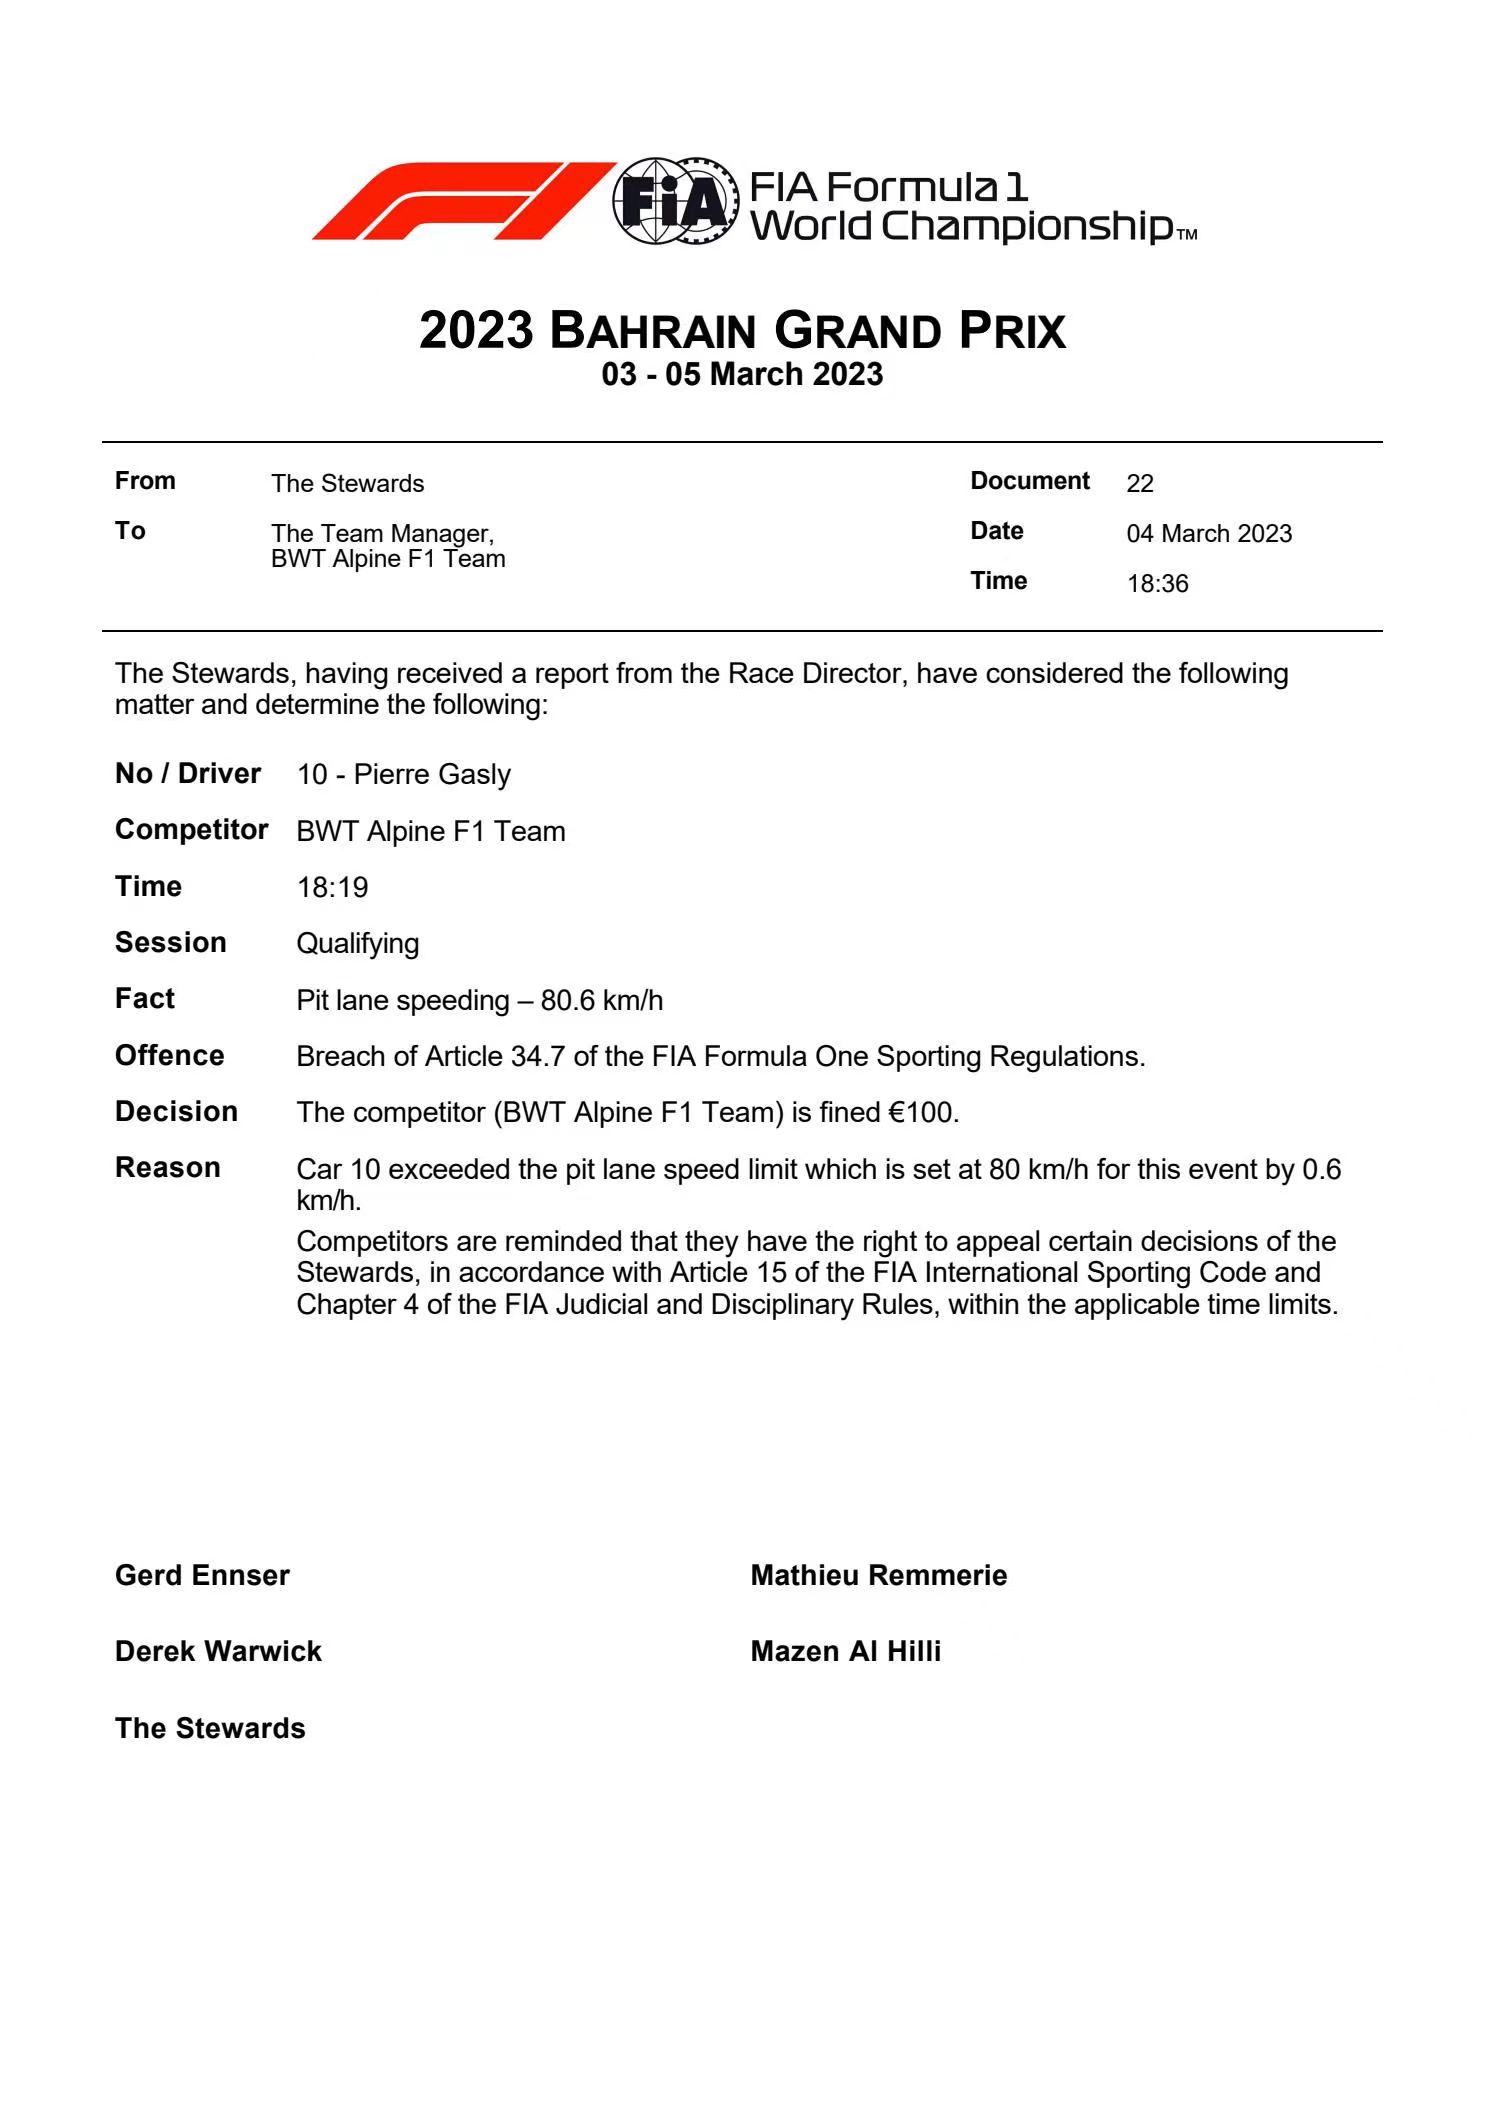 加斯利被FIA开出罚单。